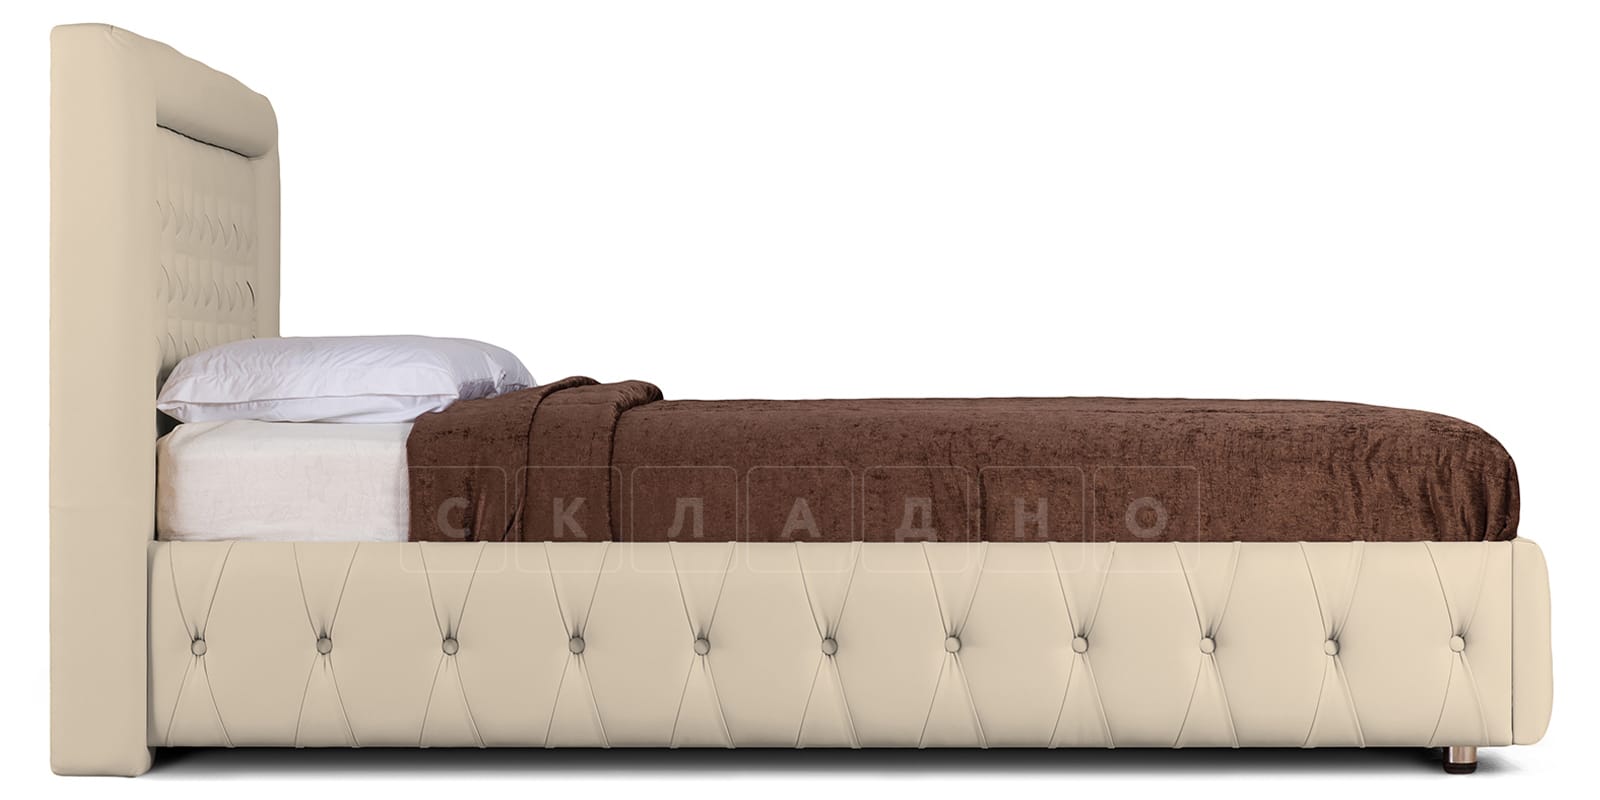 Мягкая кровать Малибу 160 см экокожа бежевый вариант 7-2 фото 3 | интернет-магазин Складно